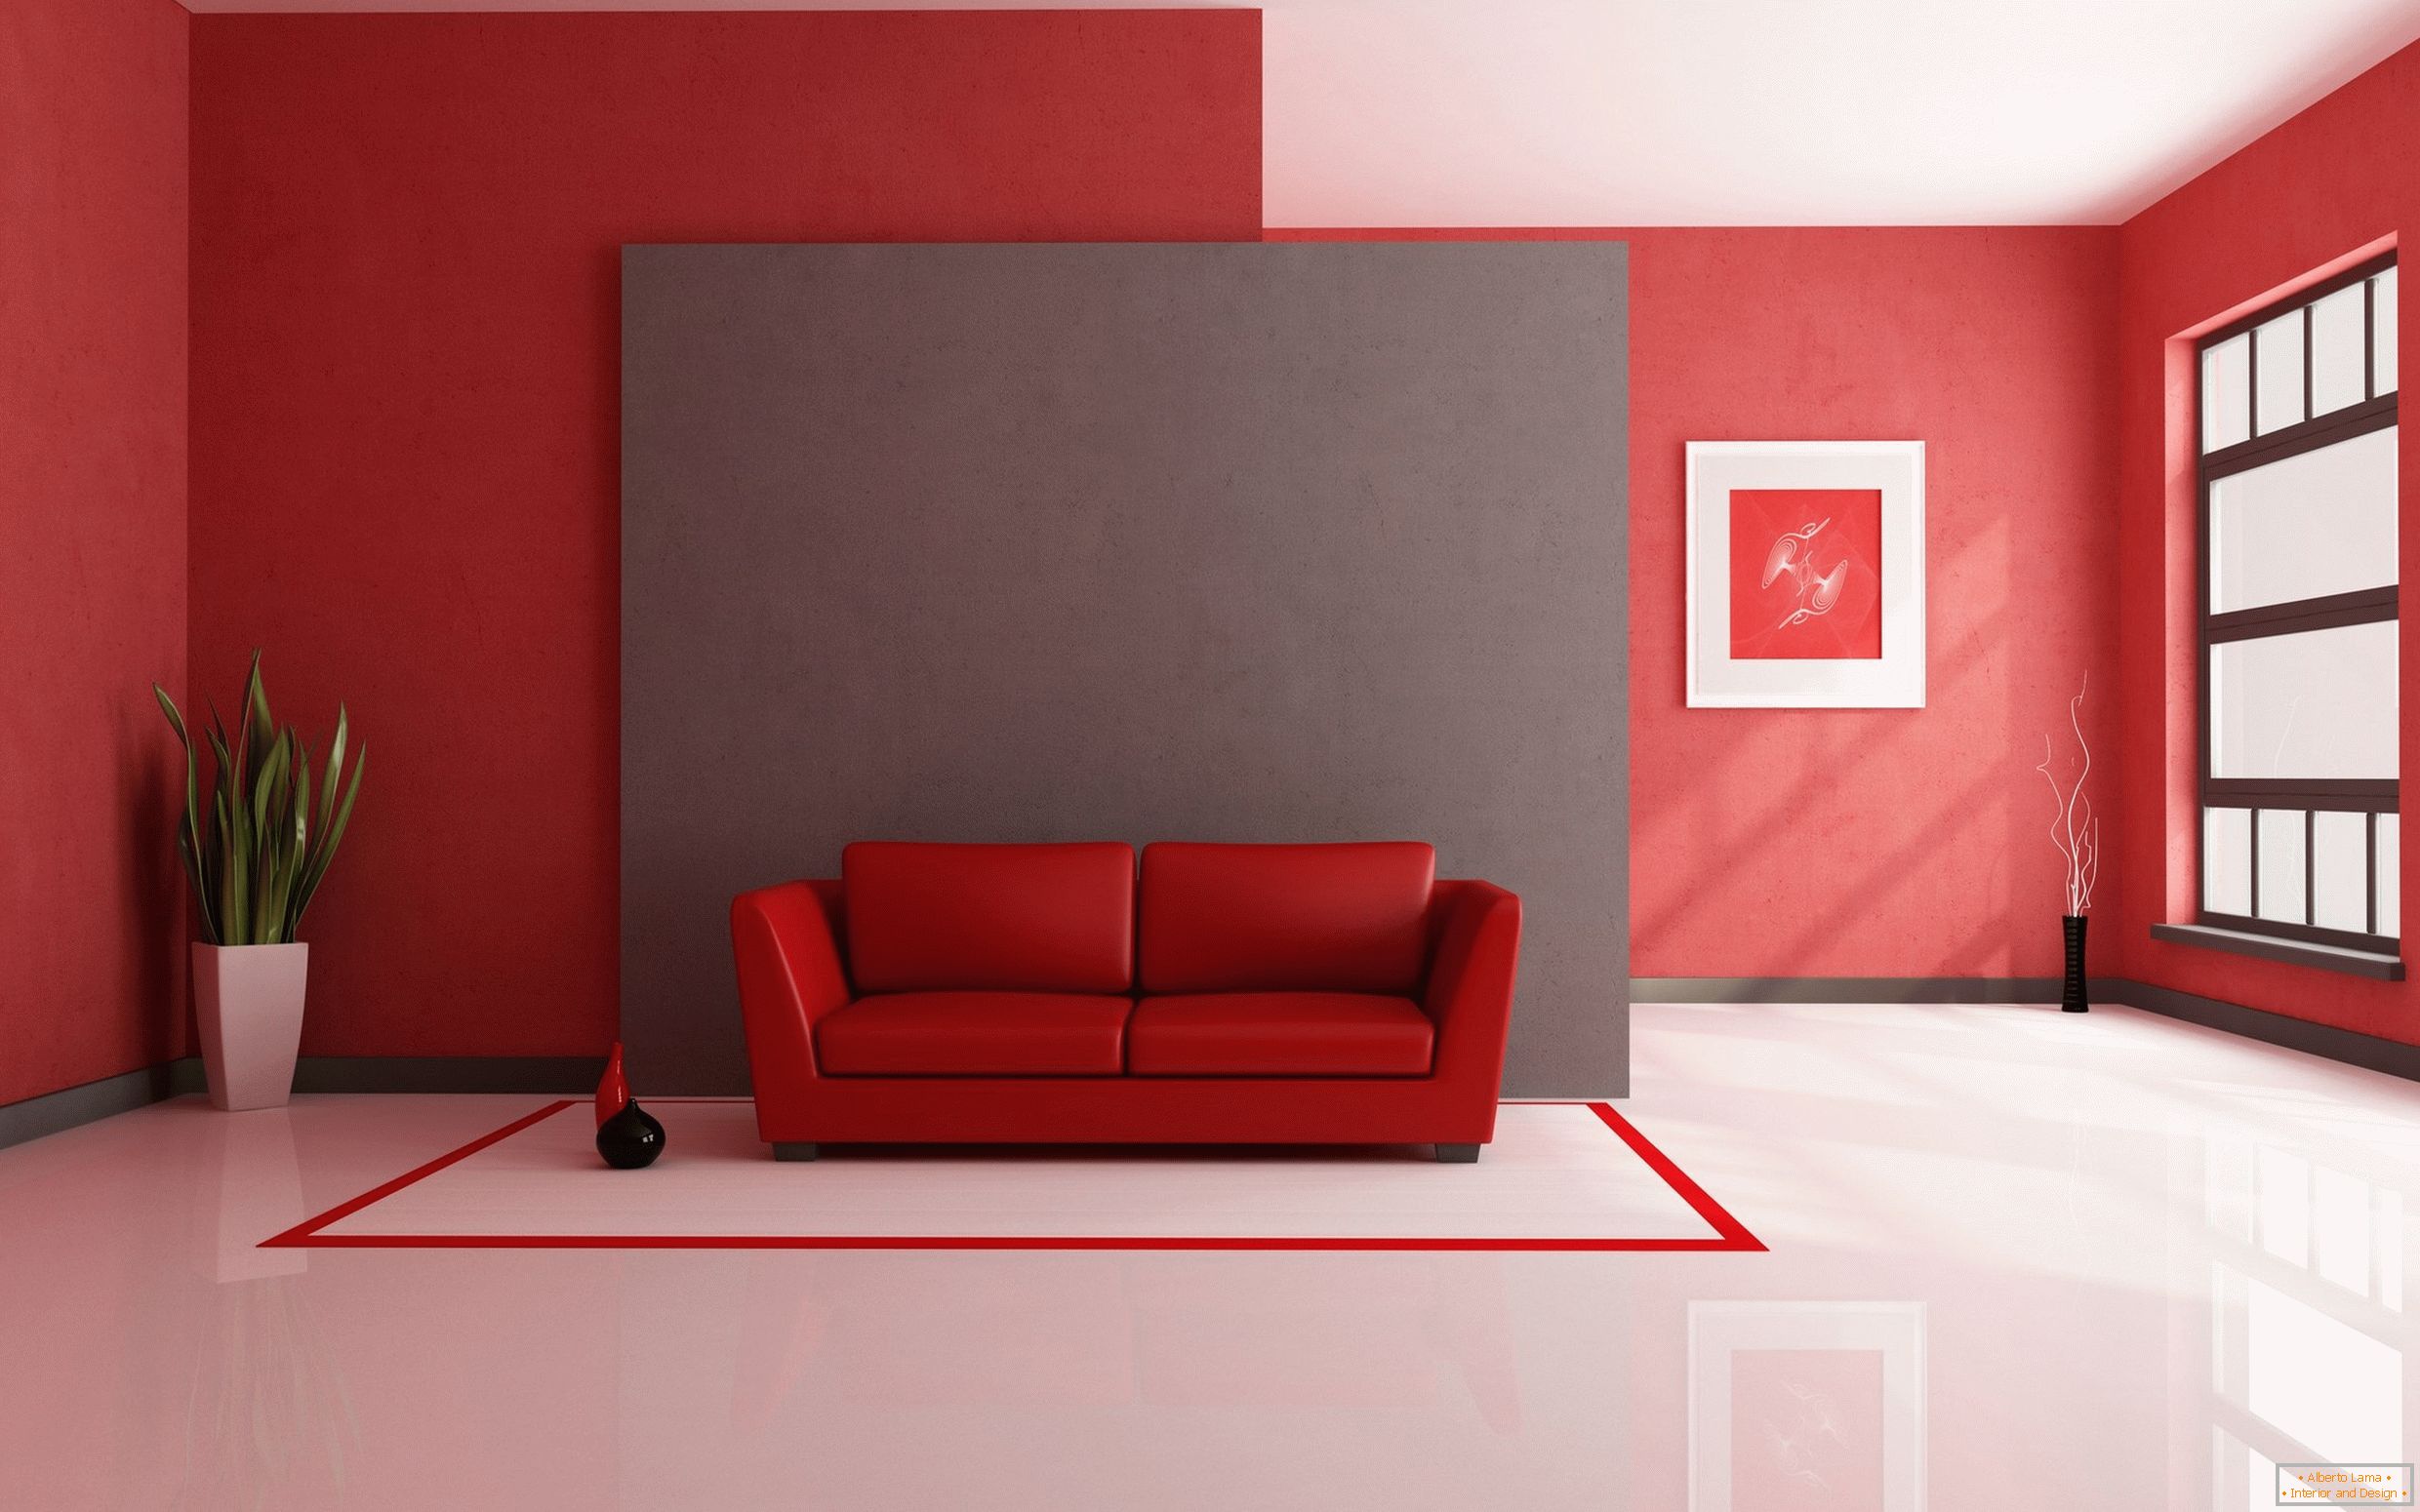 Chão branco em combinação com materiais de acabamento vermelhos e itens de interior